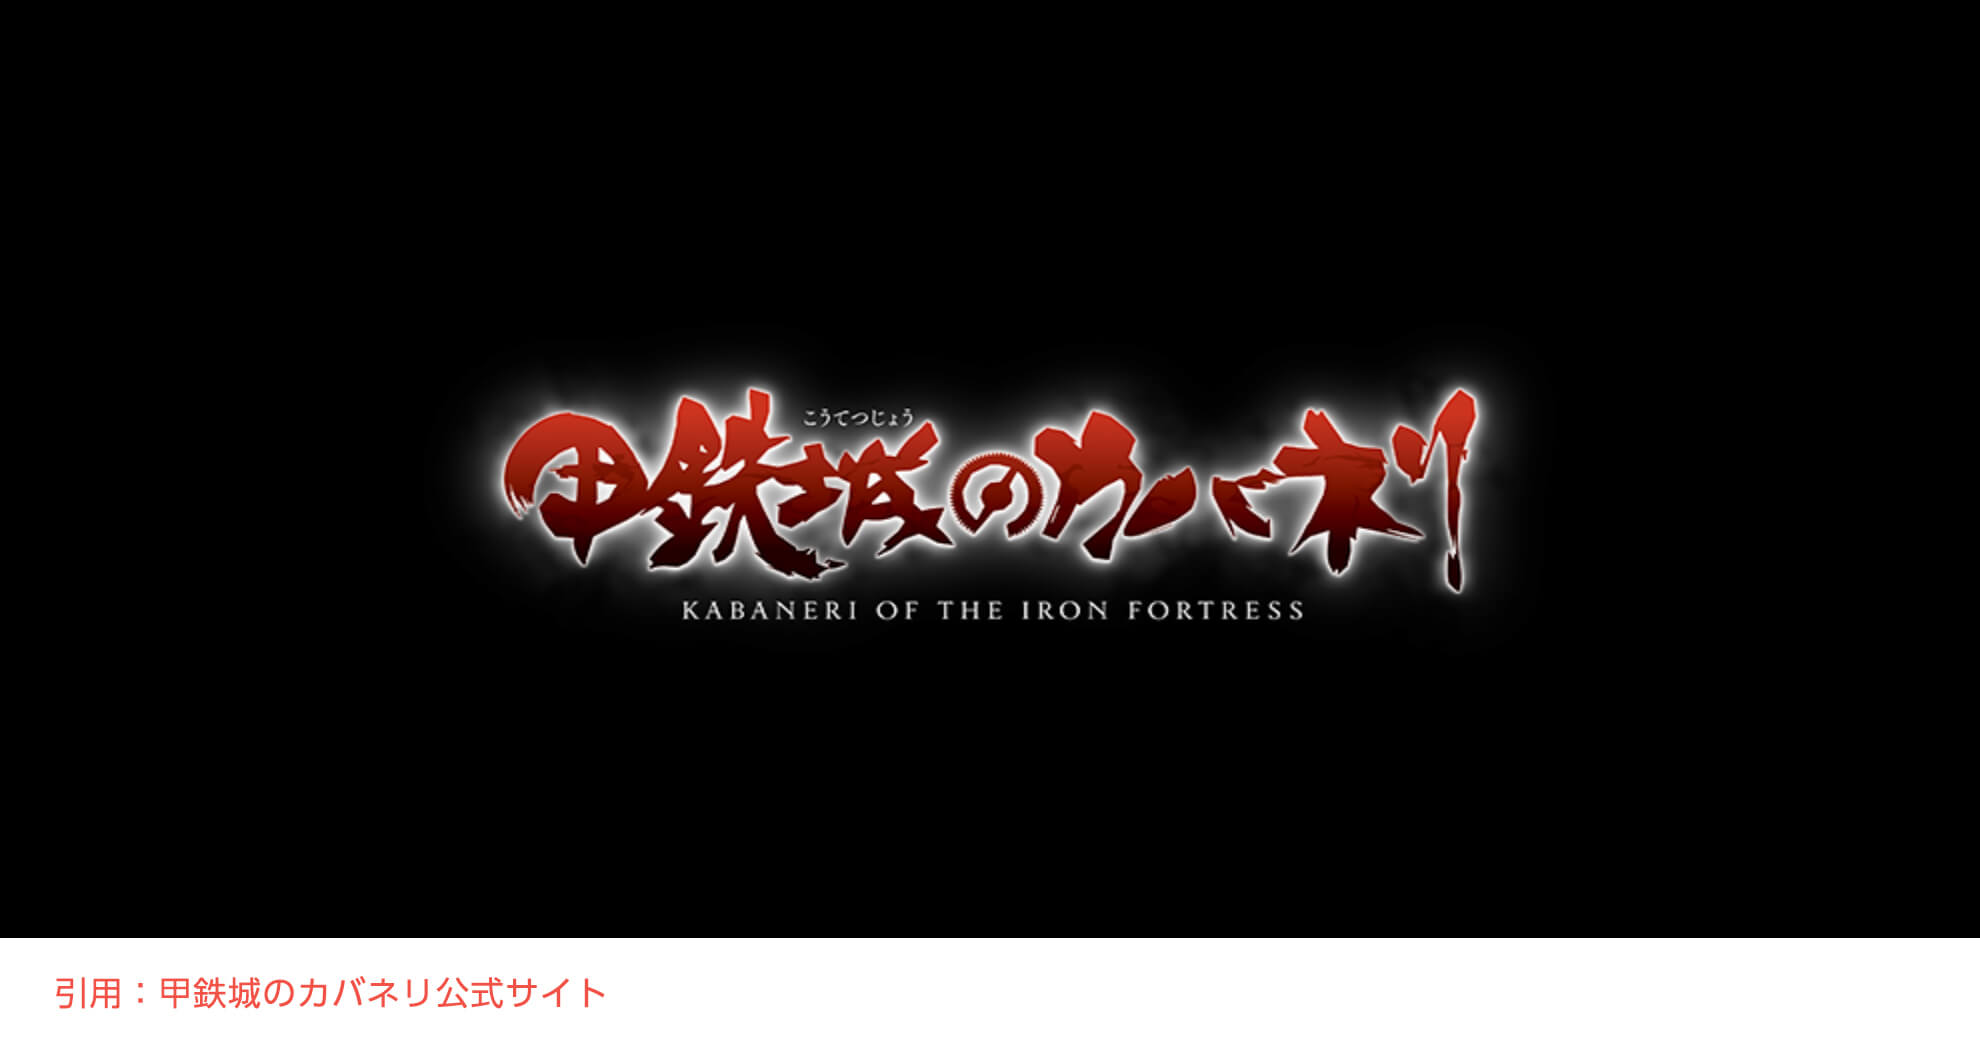 アニメ 甲鉄城のカバネリ の動画を見放題 無料の視聴方法は